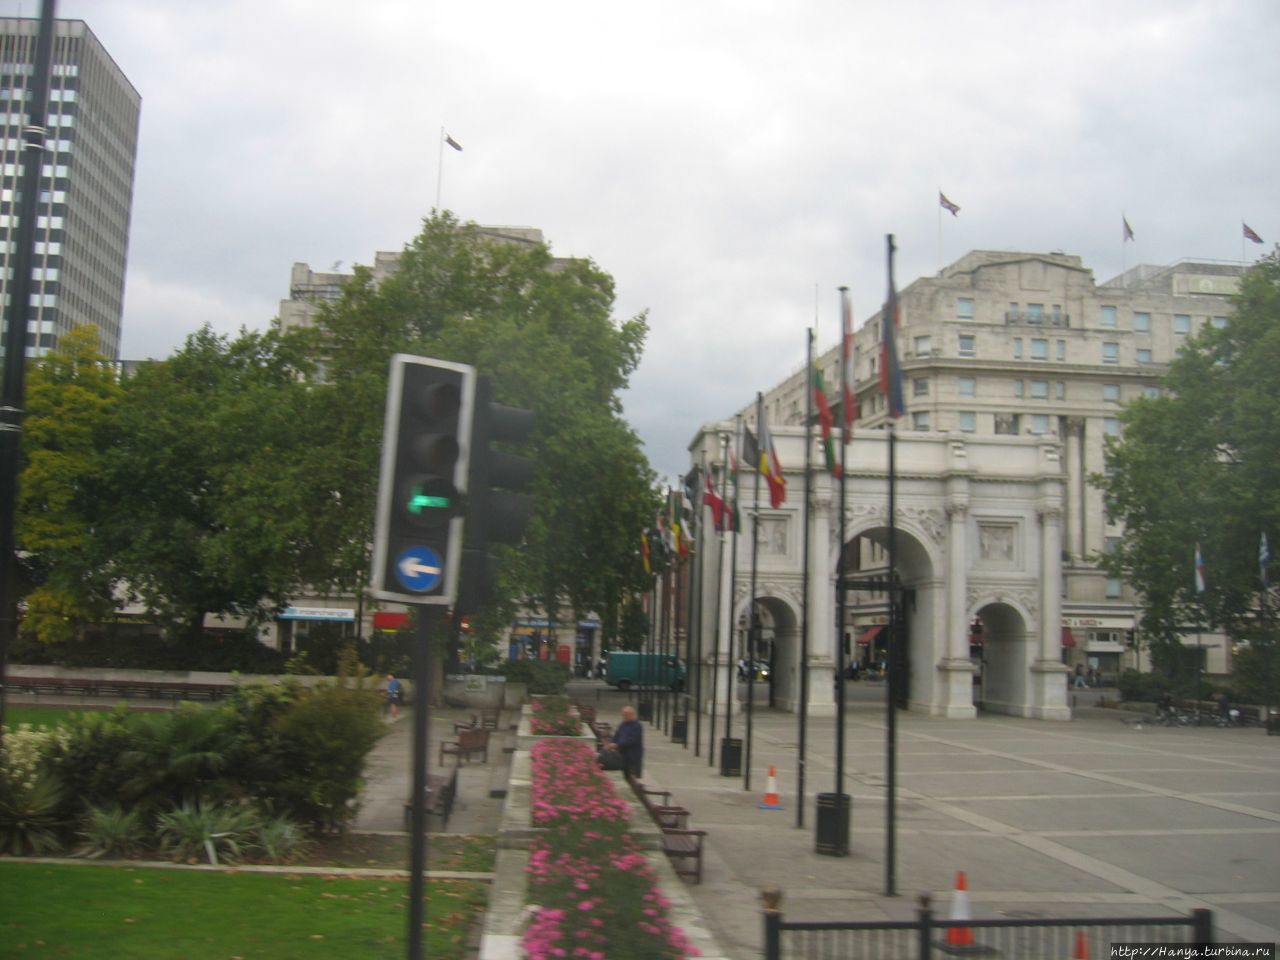 Мраморная арка рядом с Гайд-парком в Лондоне Лондон, Великобритания